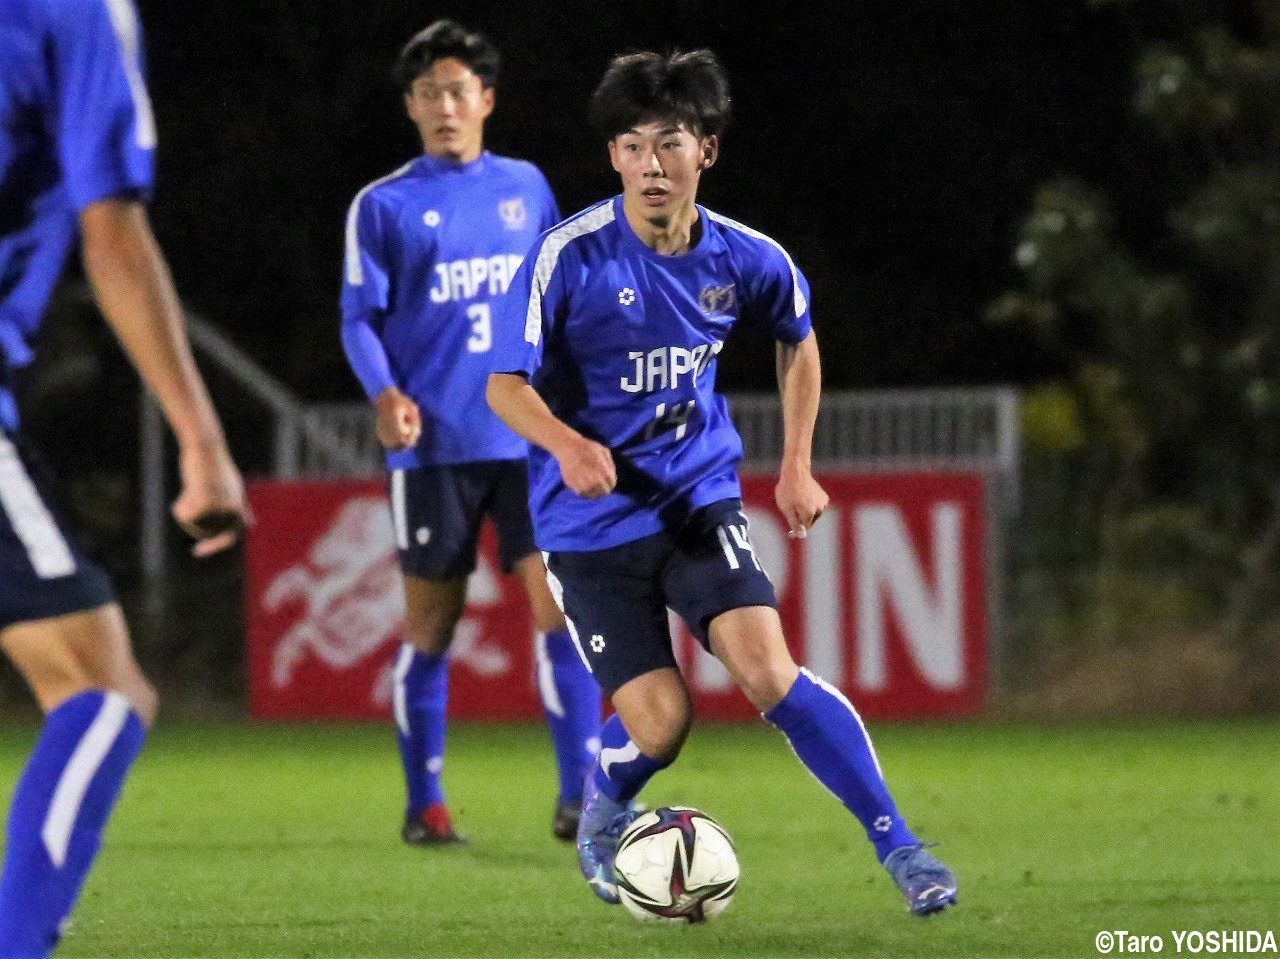 【ゲキサカ】瀬戸内MF江川楓、U-17日本高校選抜で前へ出て、結果を残して弾みを